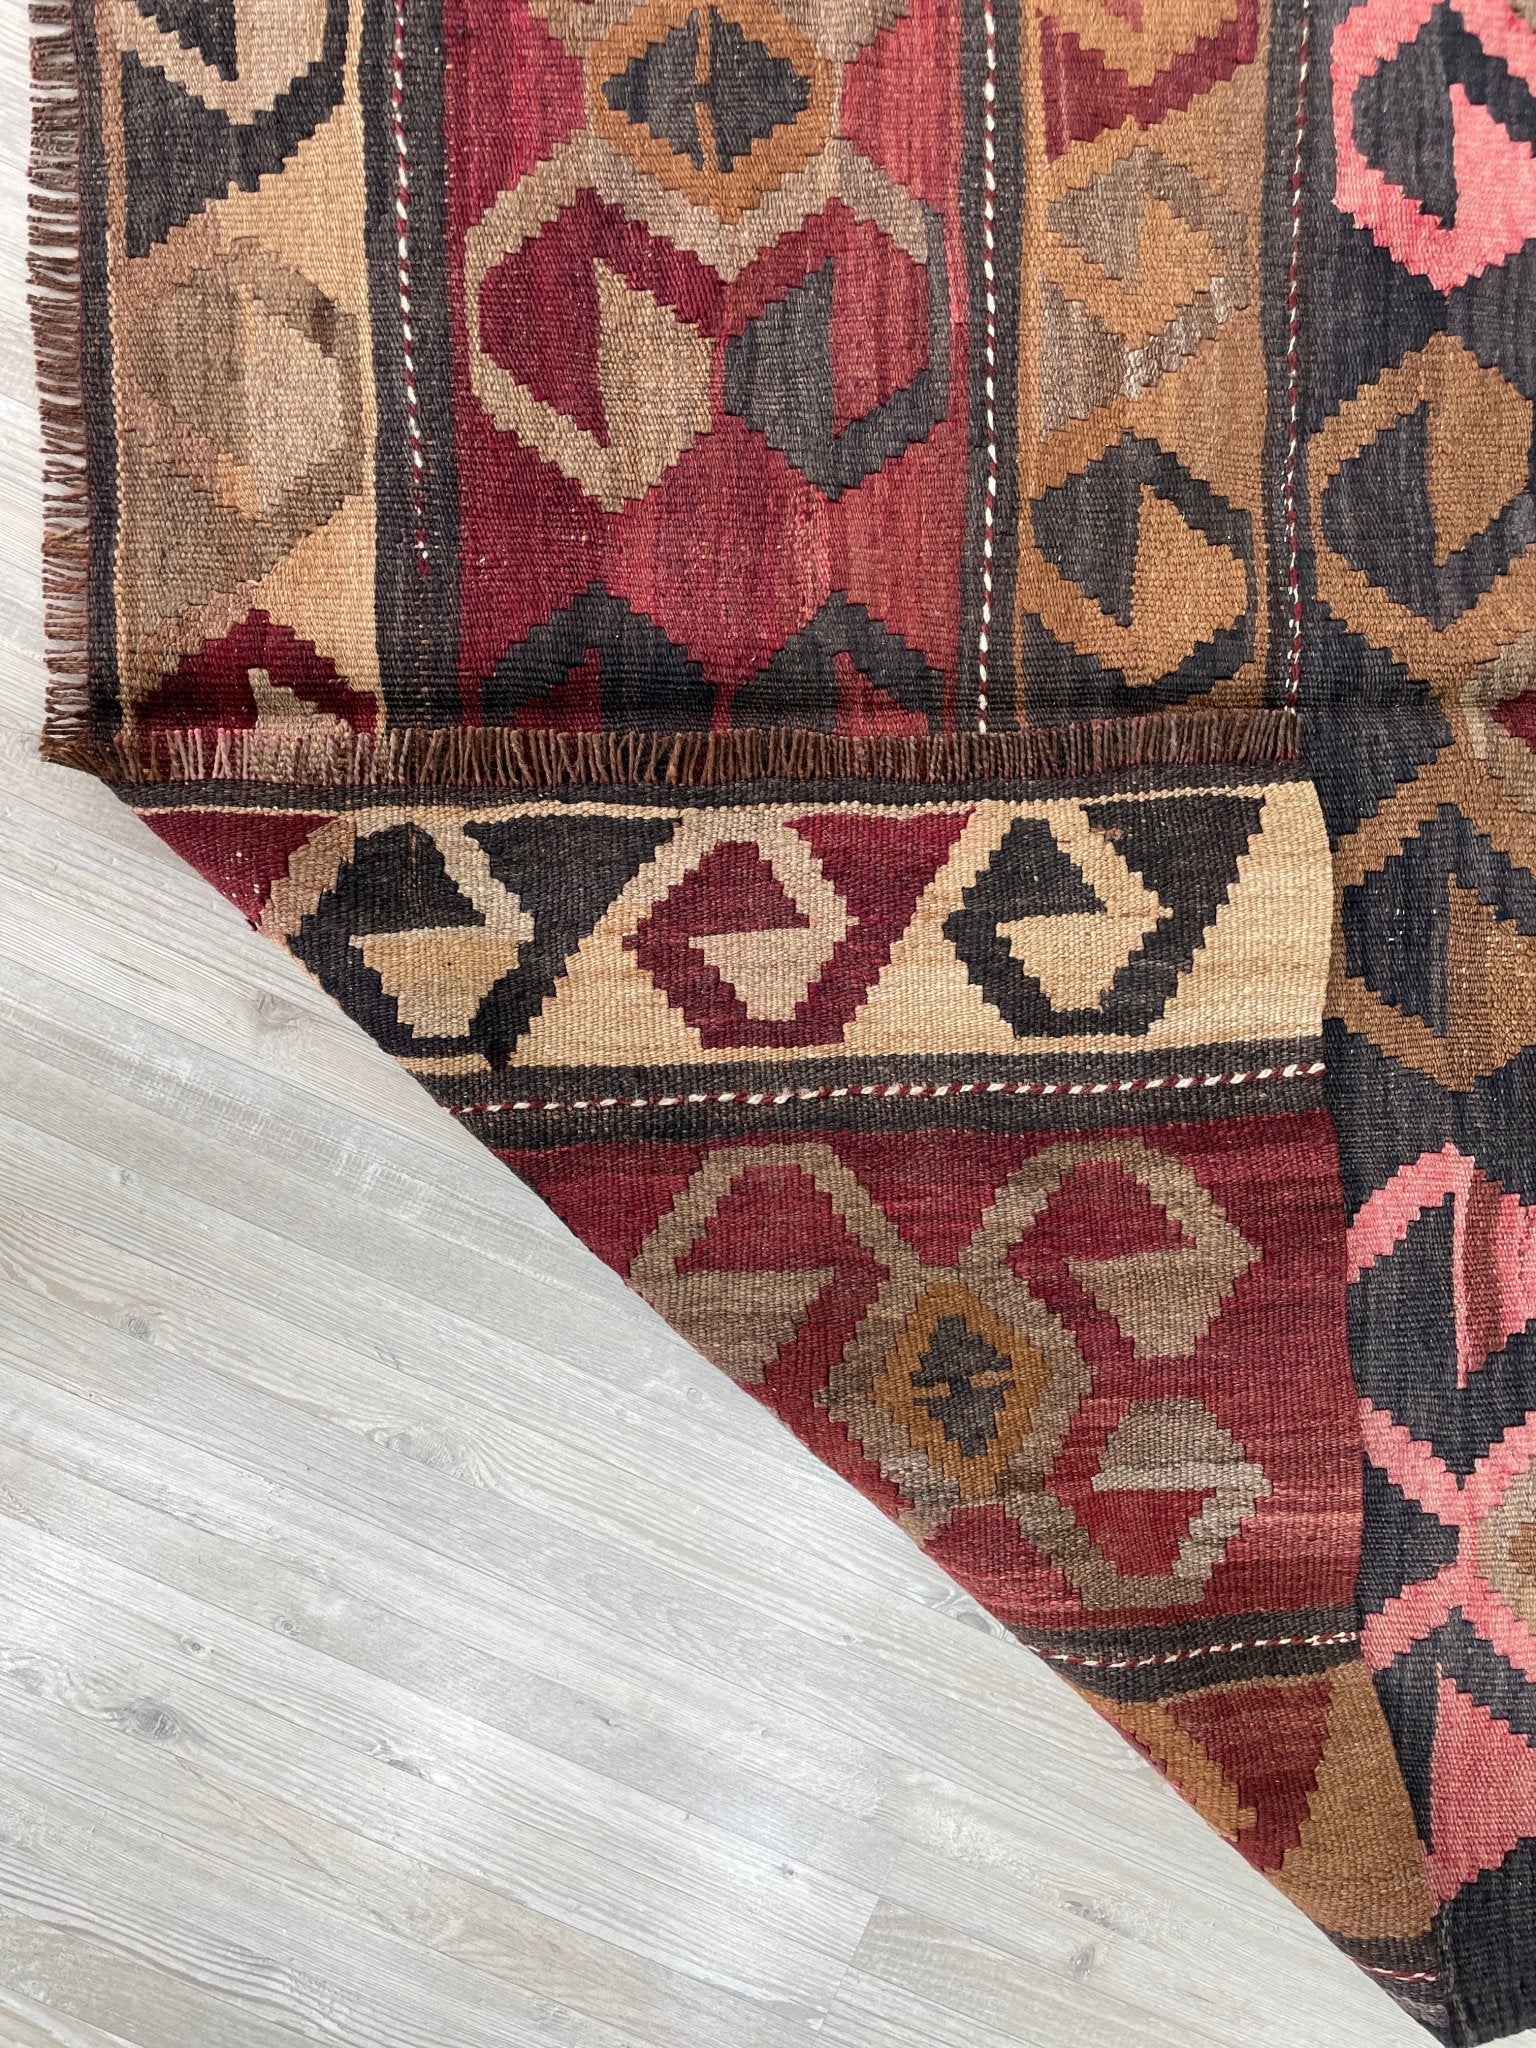 turkish kilim rug shop san francisco bay area. Handmade wool rug buy online